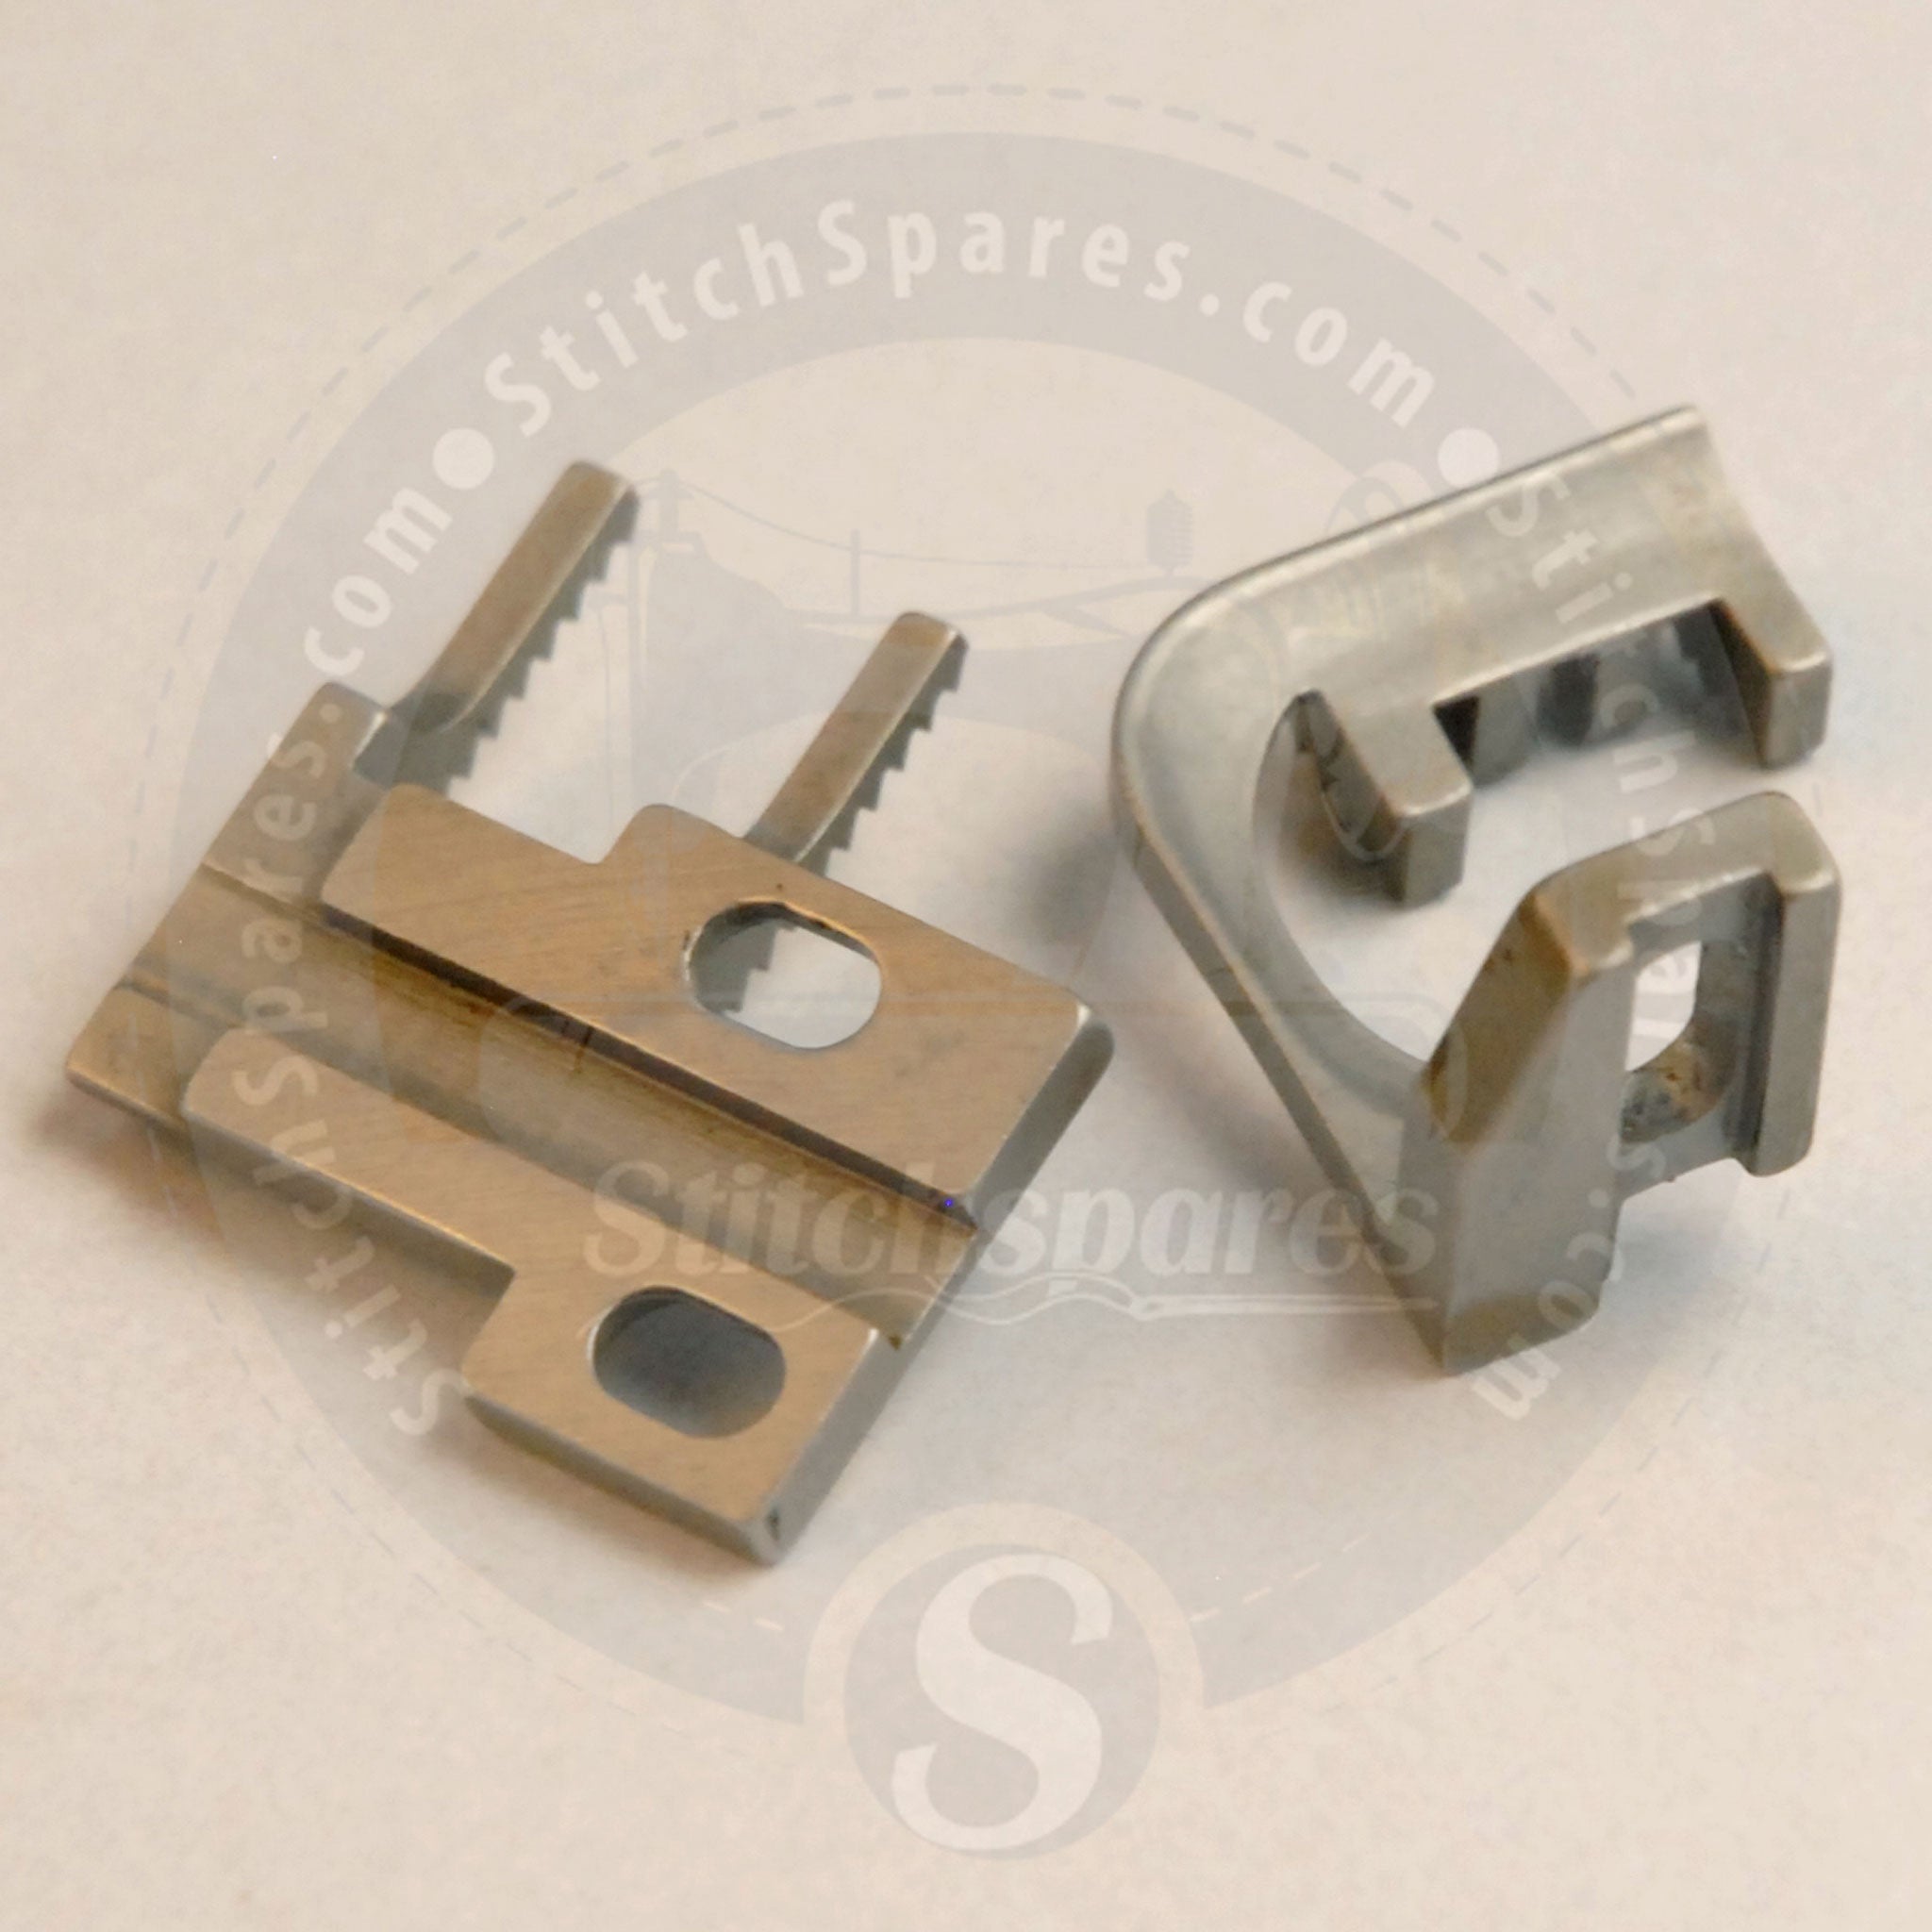 15-723 15-753 Juego de dientes de arrastre para Kansai Special Flatlock (Interlock) DVK1703D V7003D DWK1803D W8003D Máquina de coser industrial